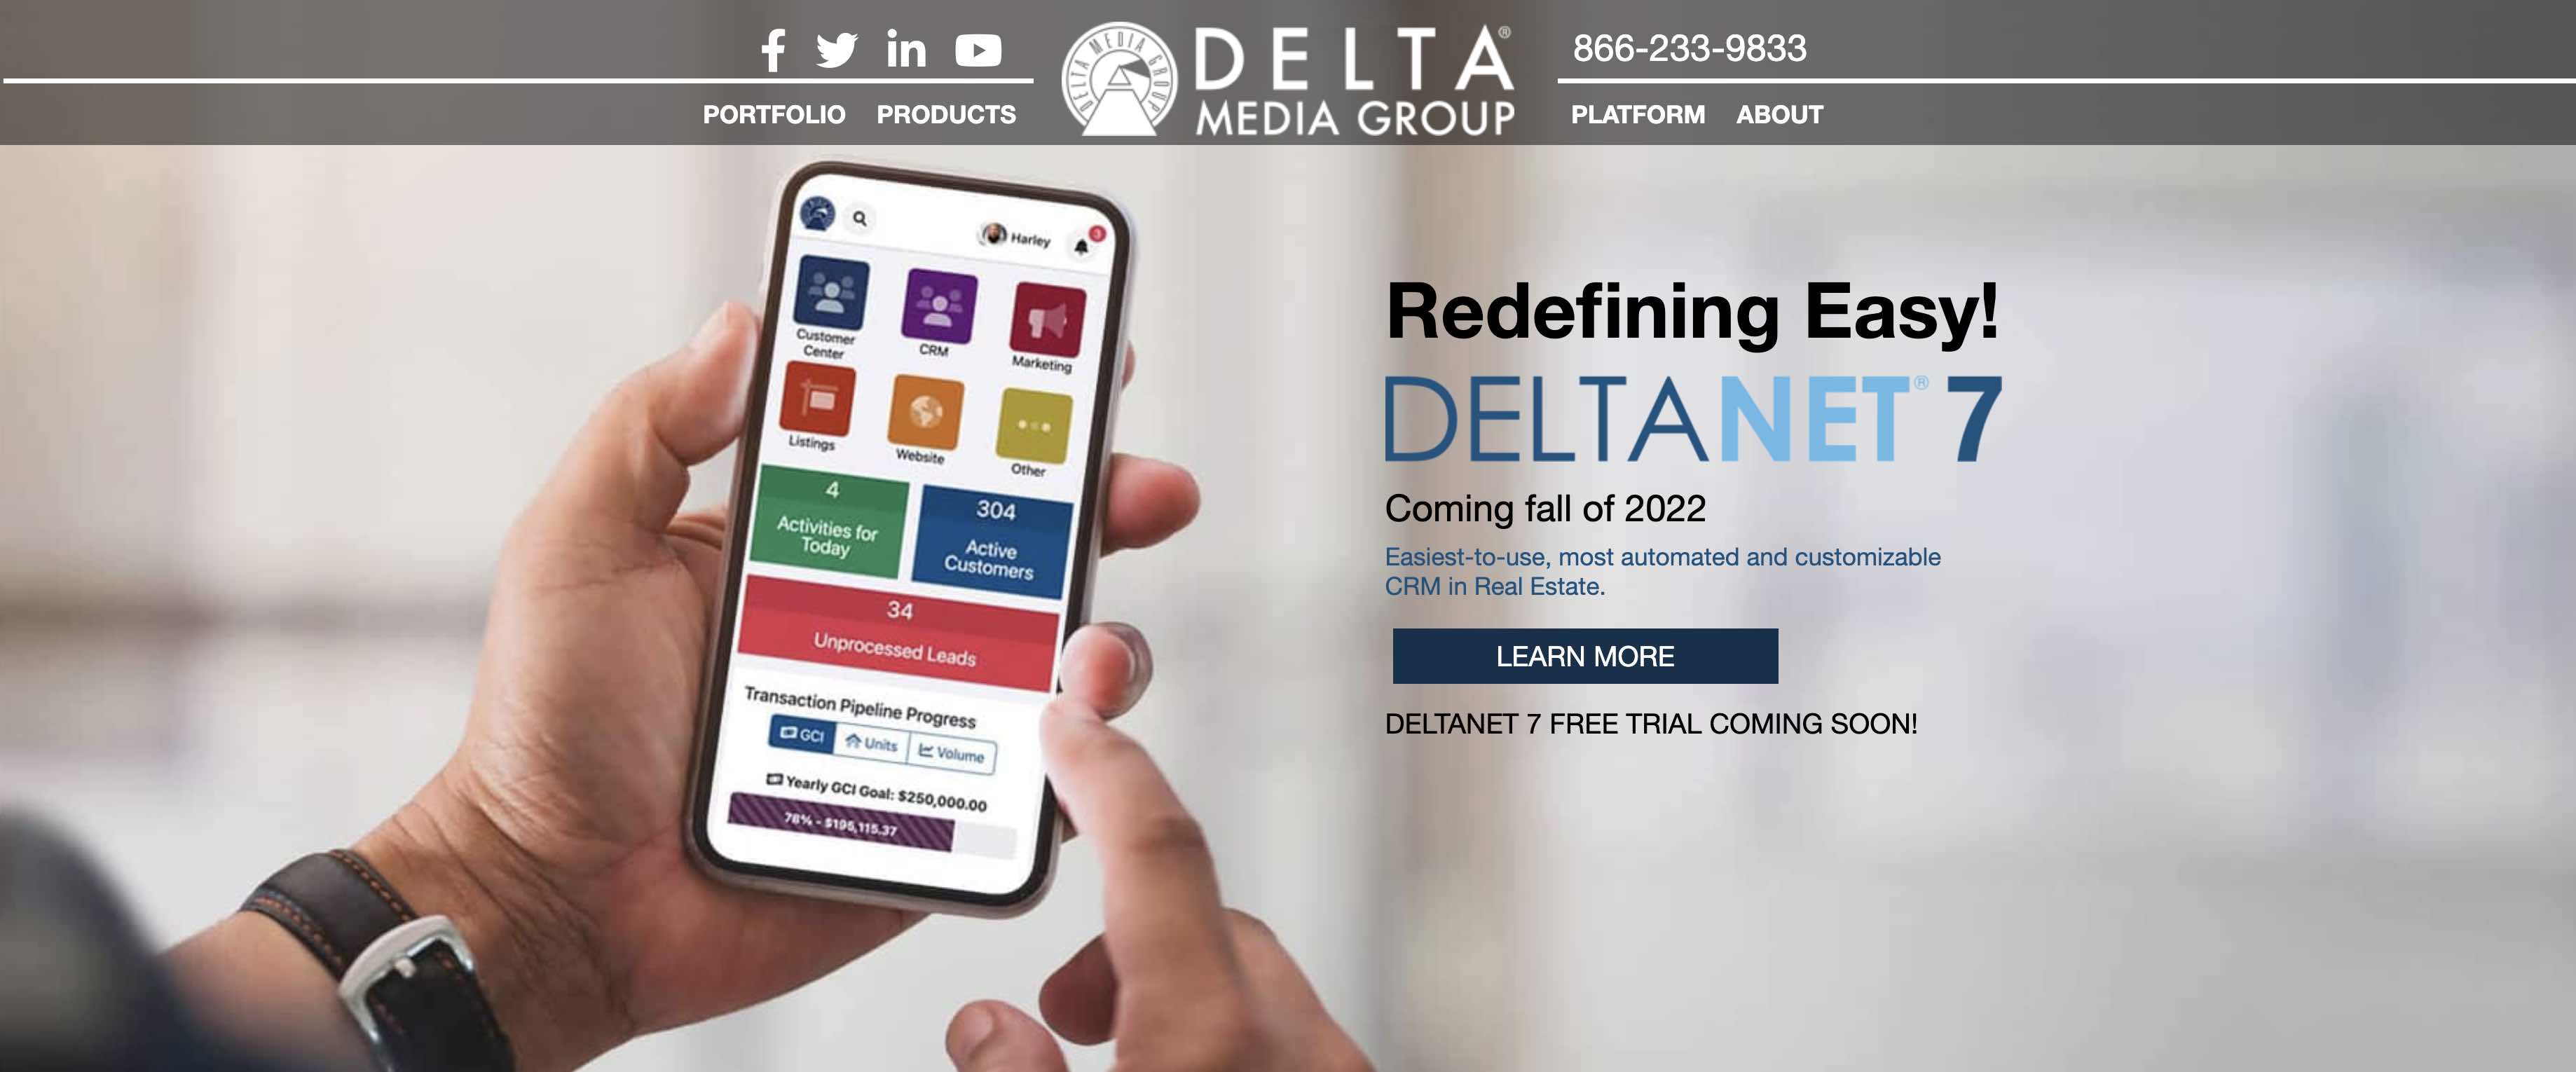 Delta webinar 202211